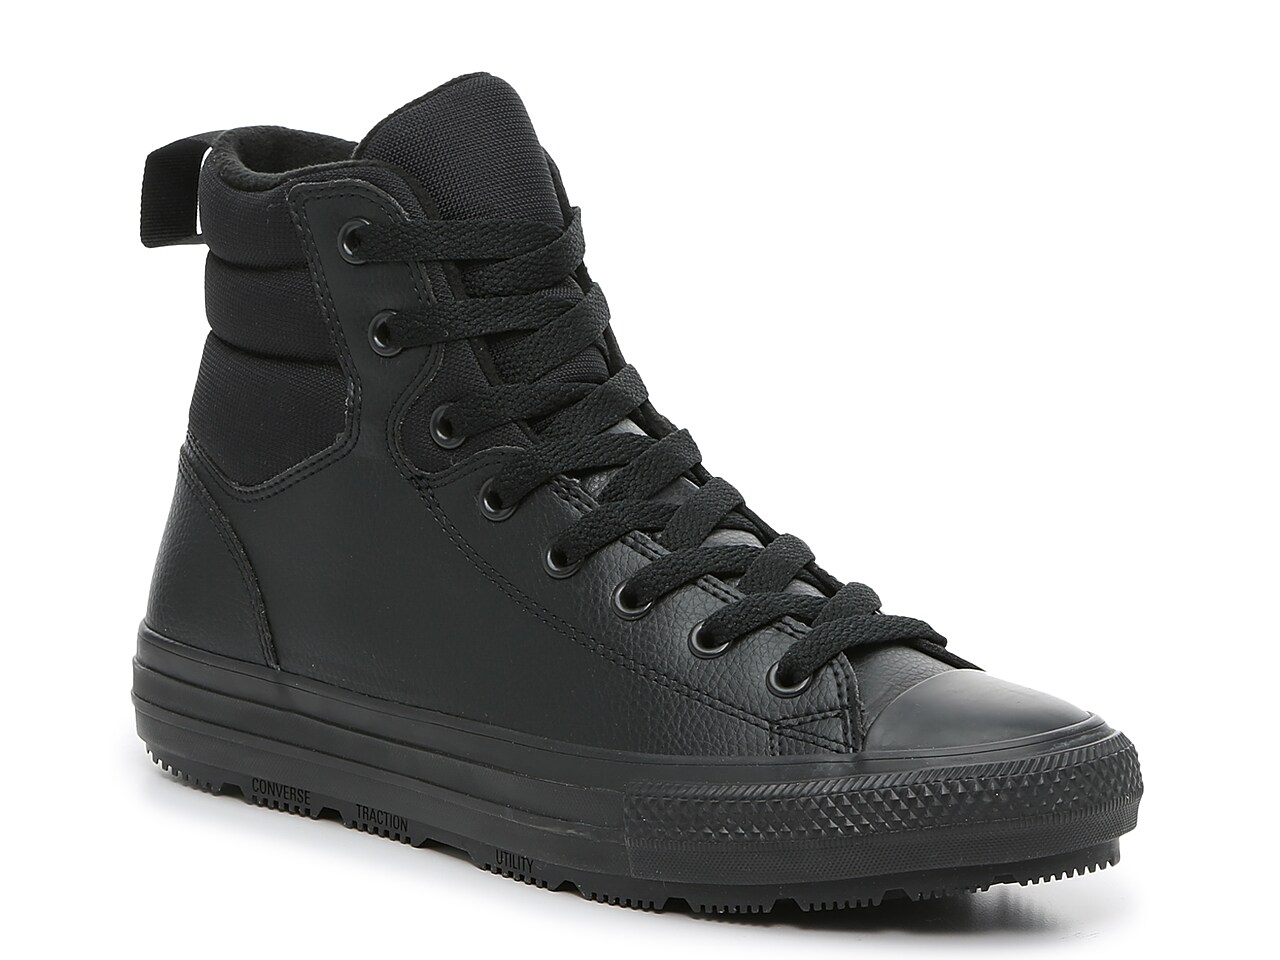 Converse Chuck Taylor All Star Berkshire High-Top Sneaker Boot - Men's